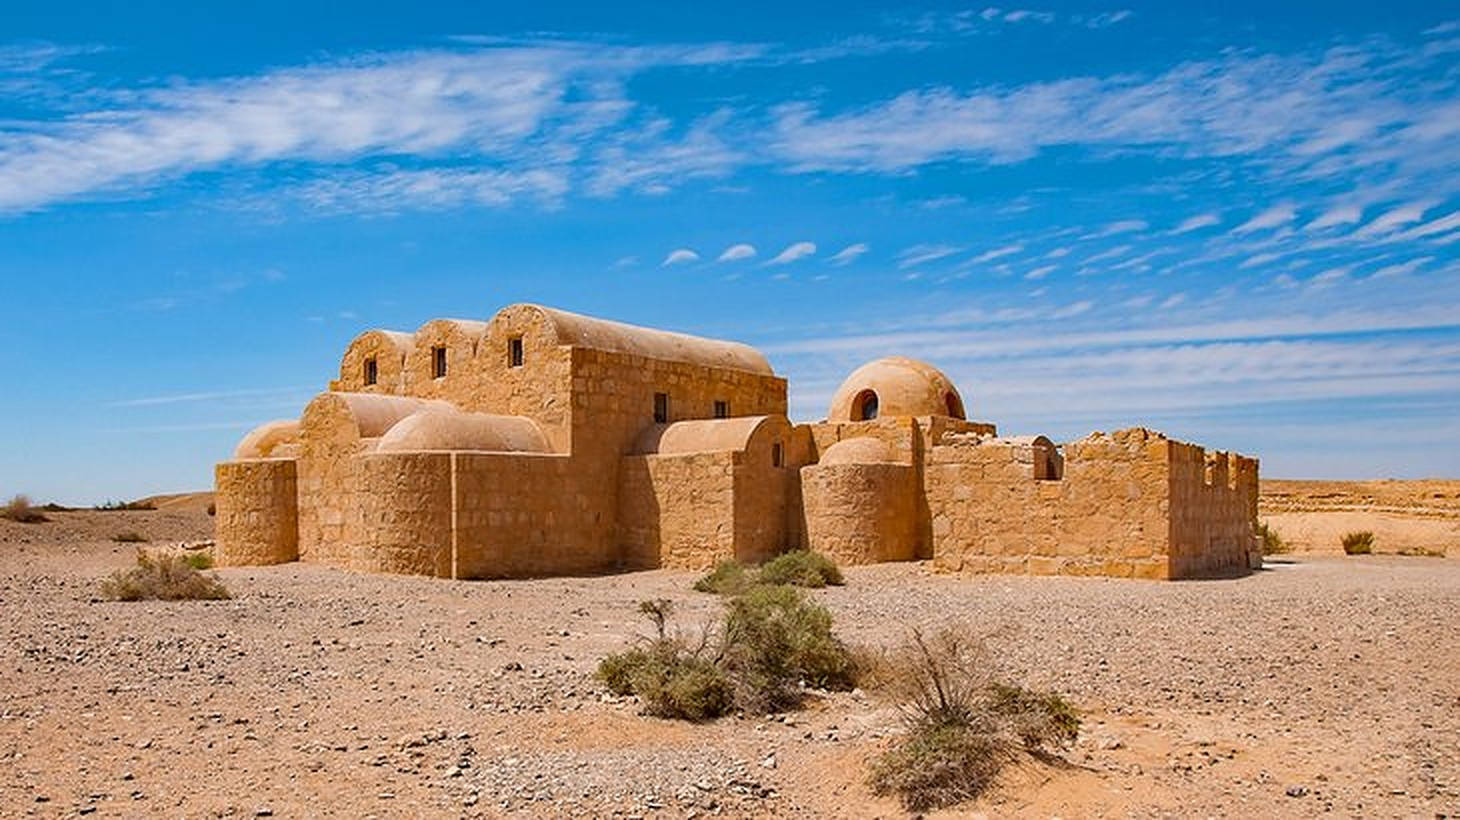 Jordan Desert Castle Background